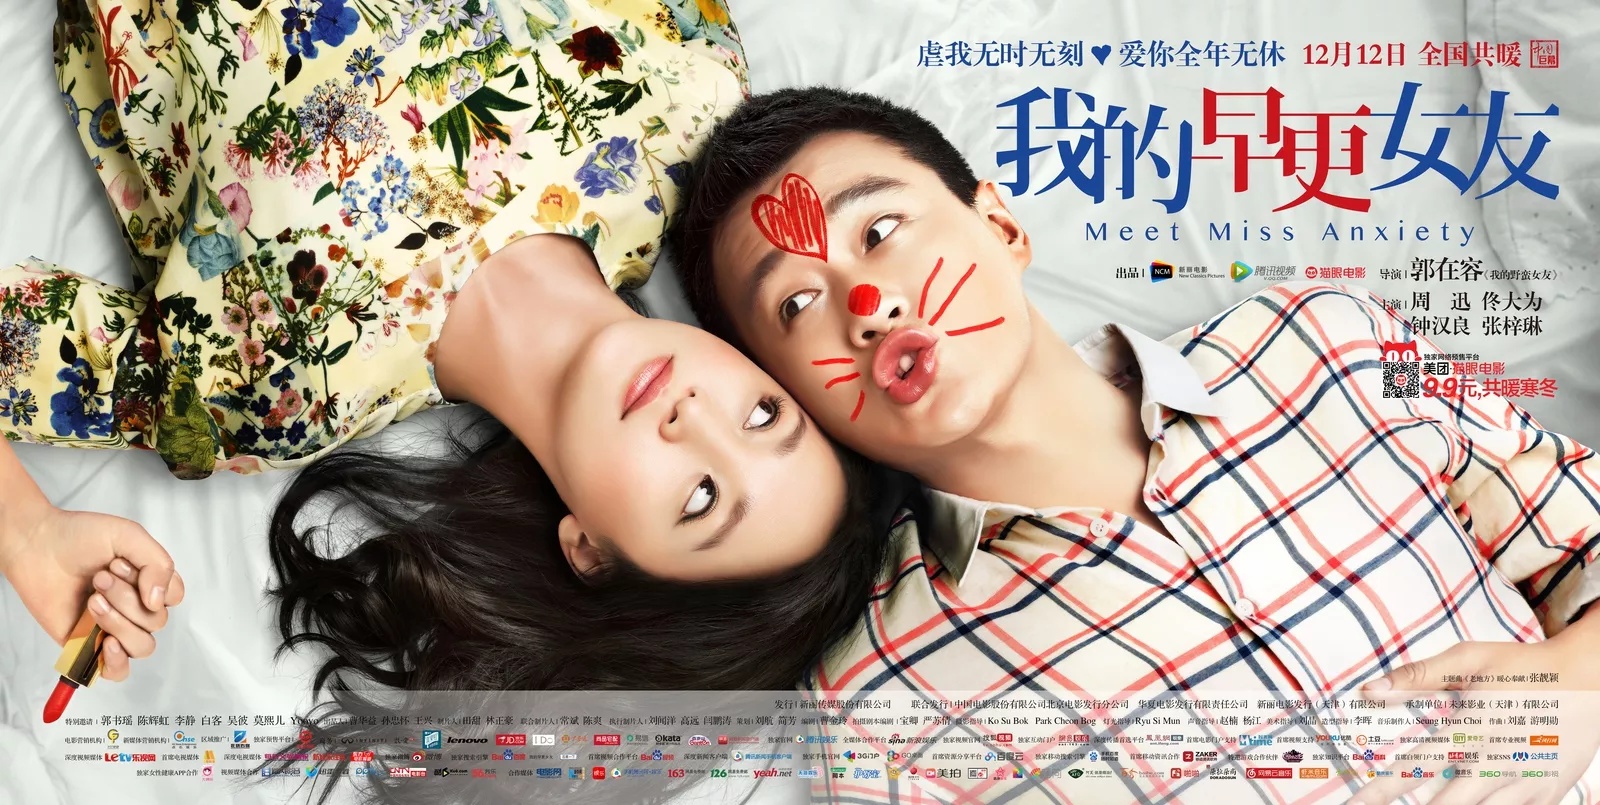 Phim hay của Chung Hán Lương đóng: Bạn gái hồi xuân của tôi - Meet miss anxiety (2014)